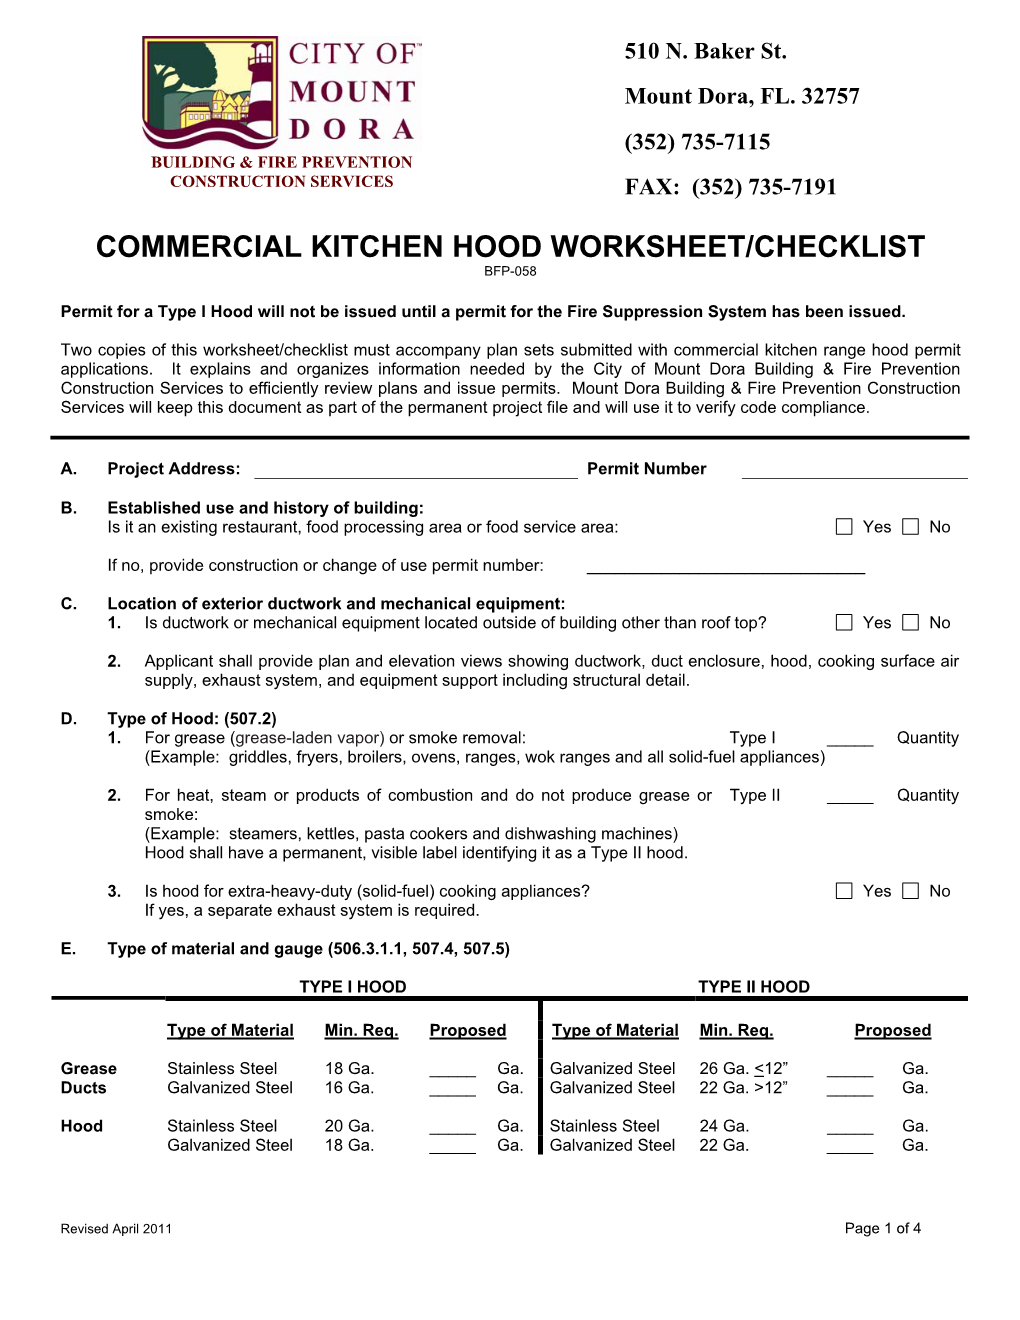 Commercial Kitchen Hood Worksheet/Checklist Bfp-058